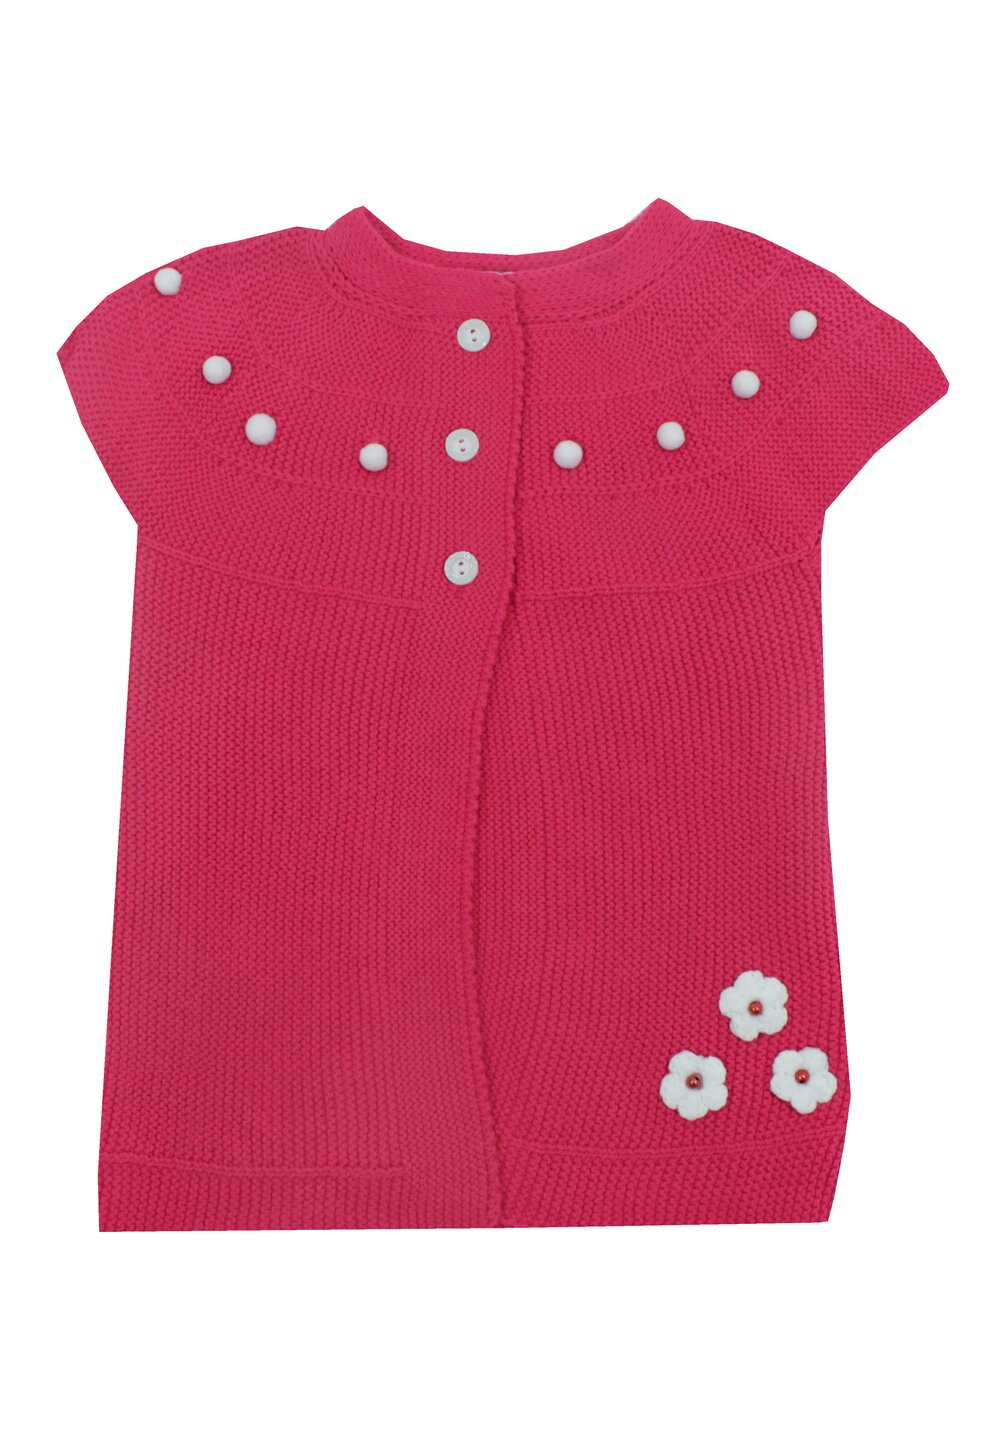 Vesta tricotata, acril, Arabela, roz inchis